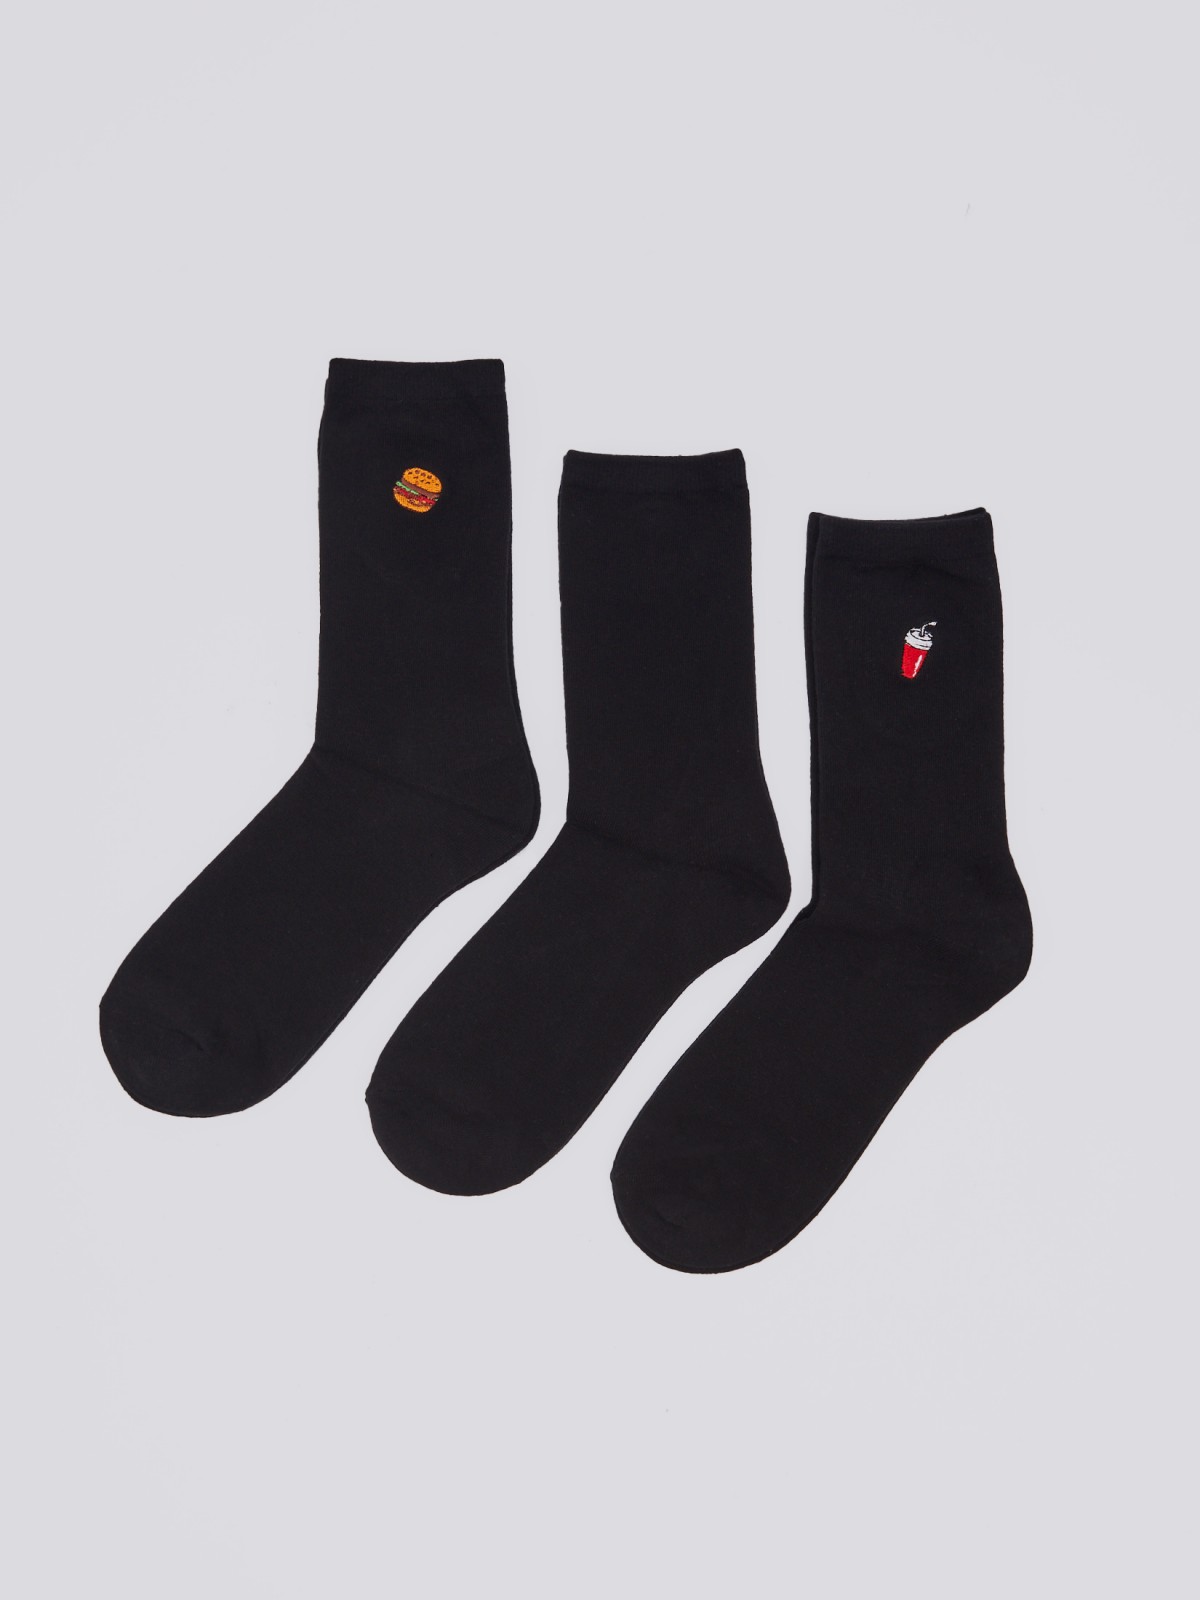 Набор носков (3 пары в комплекте) zolla 01411995P165, цвет черный, размер 25-27